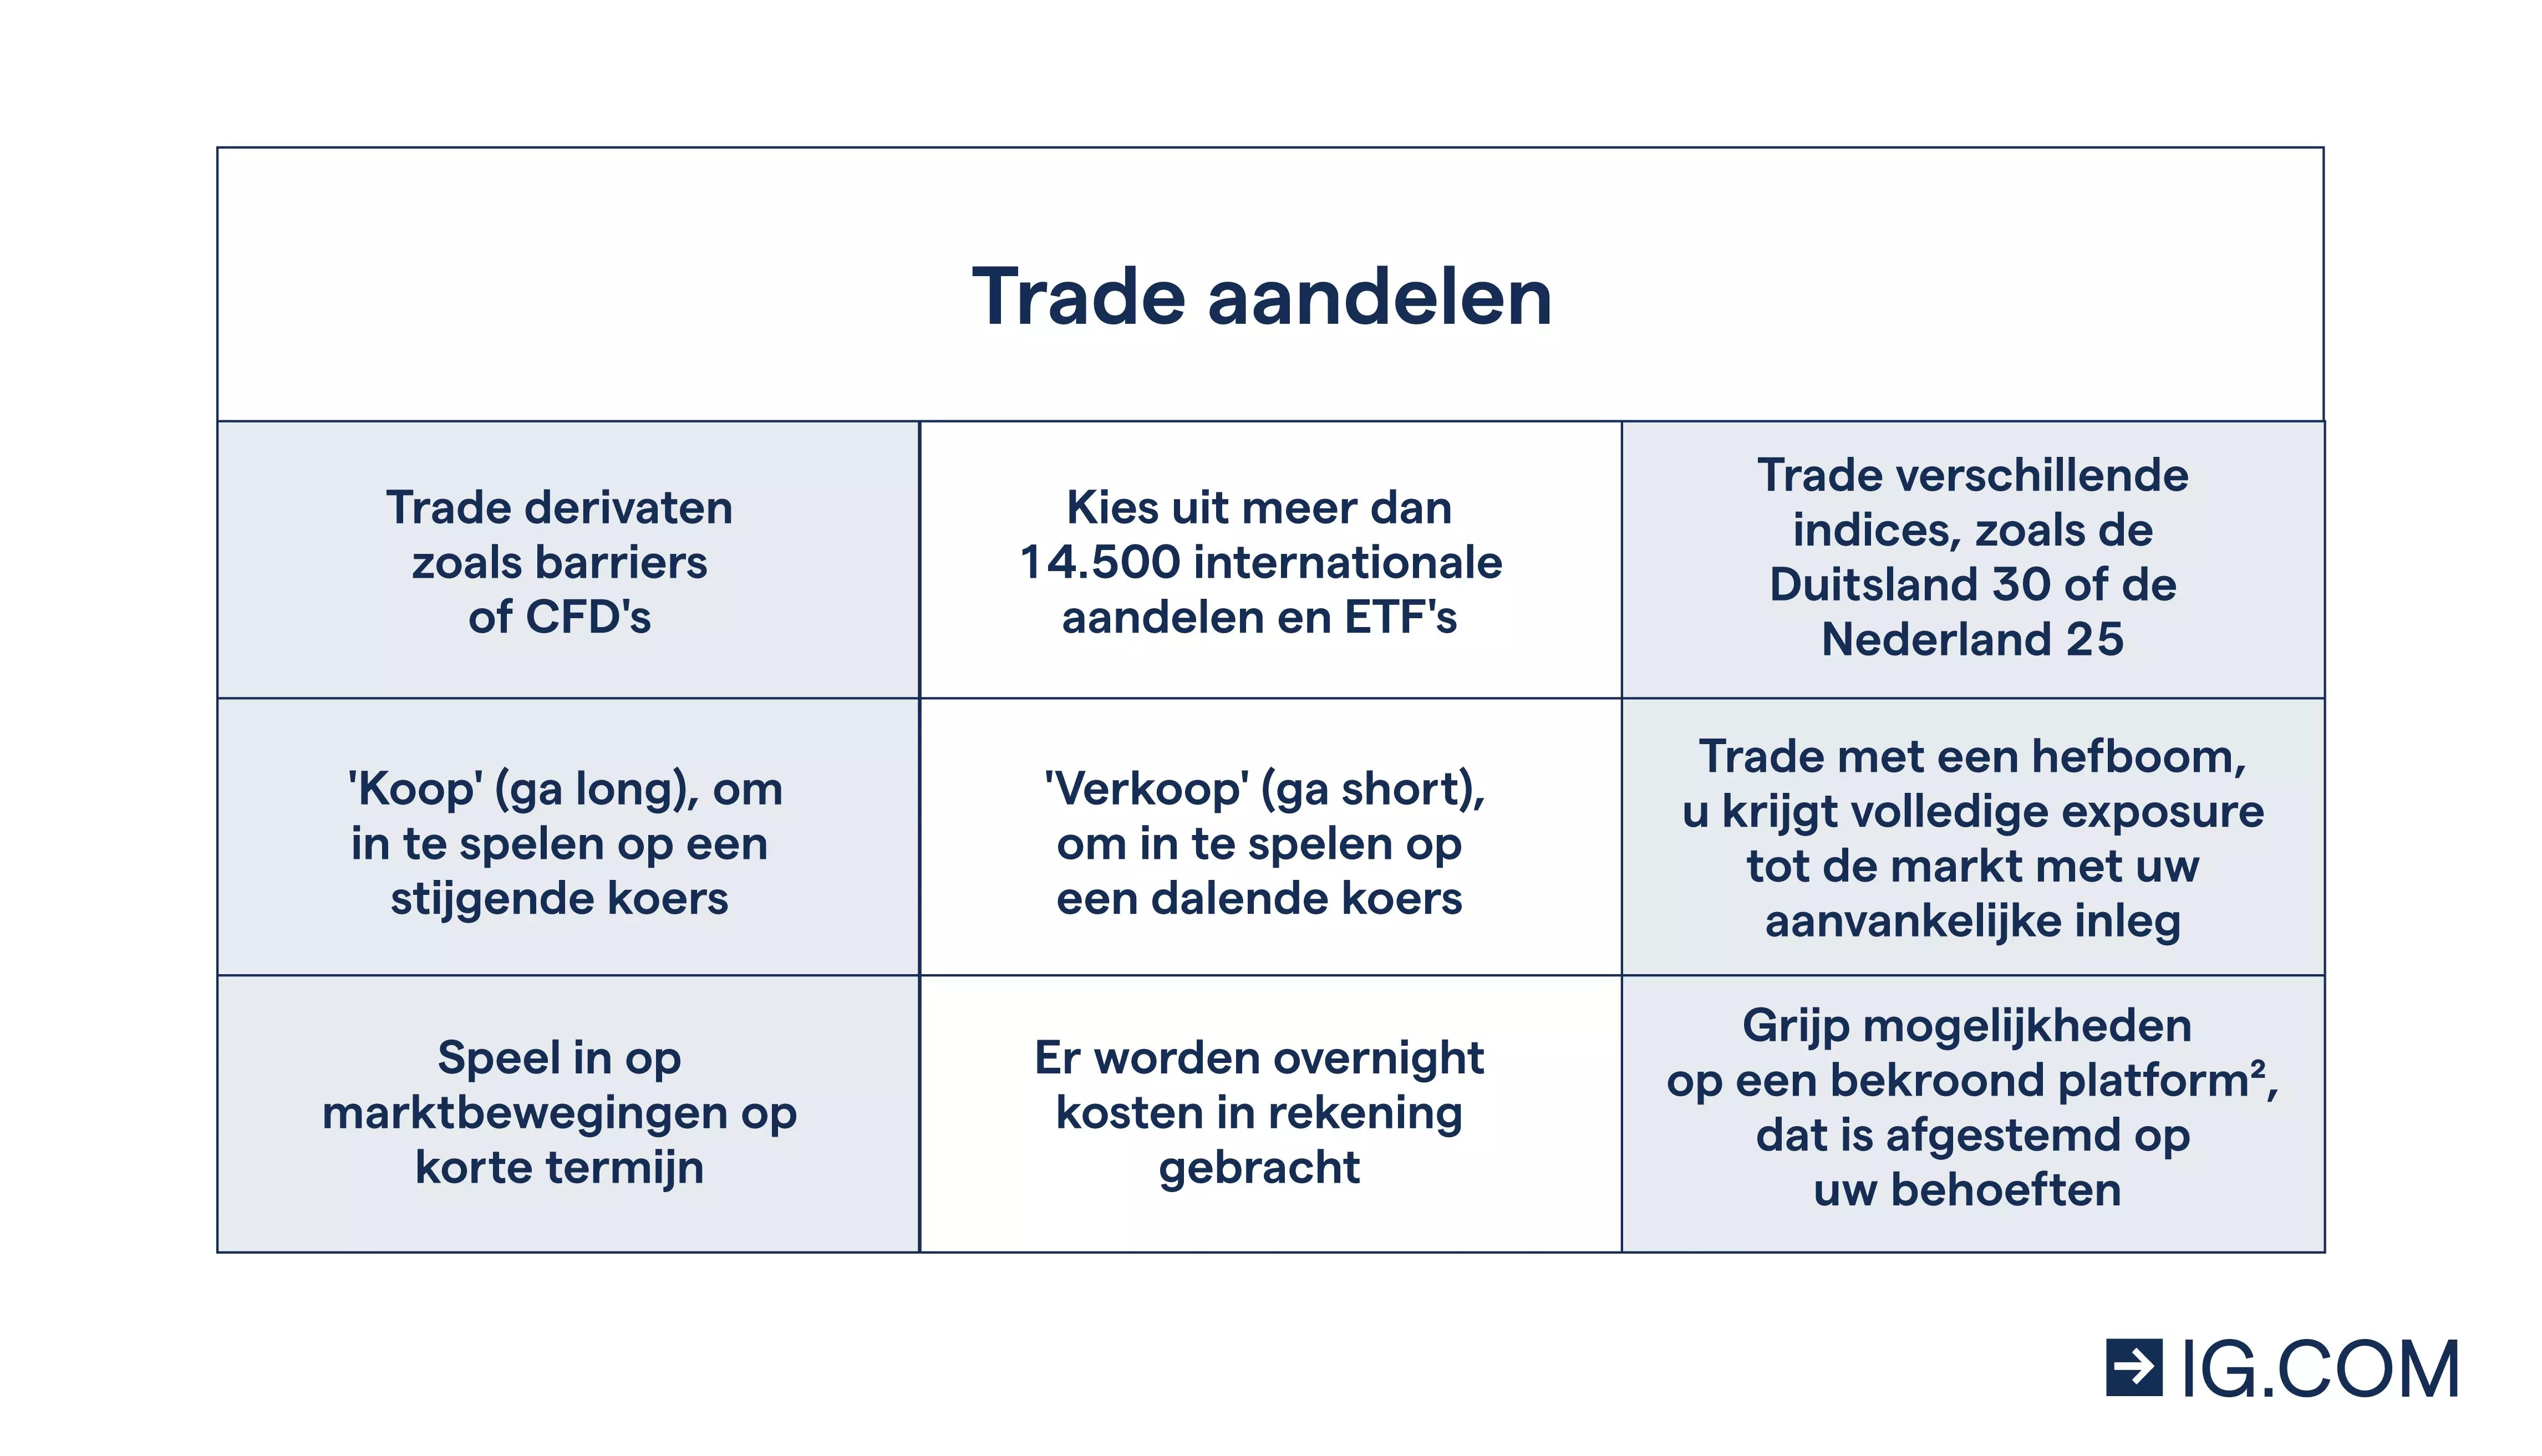 Trade aandelen